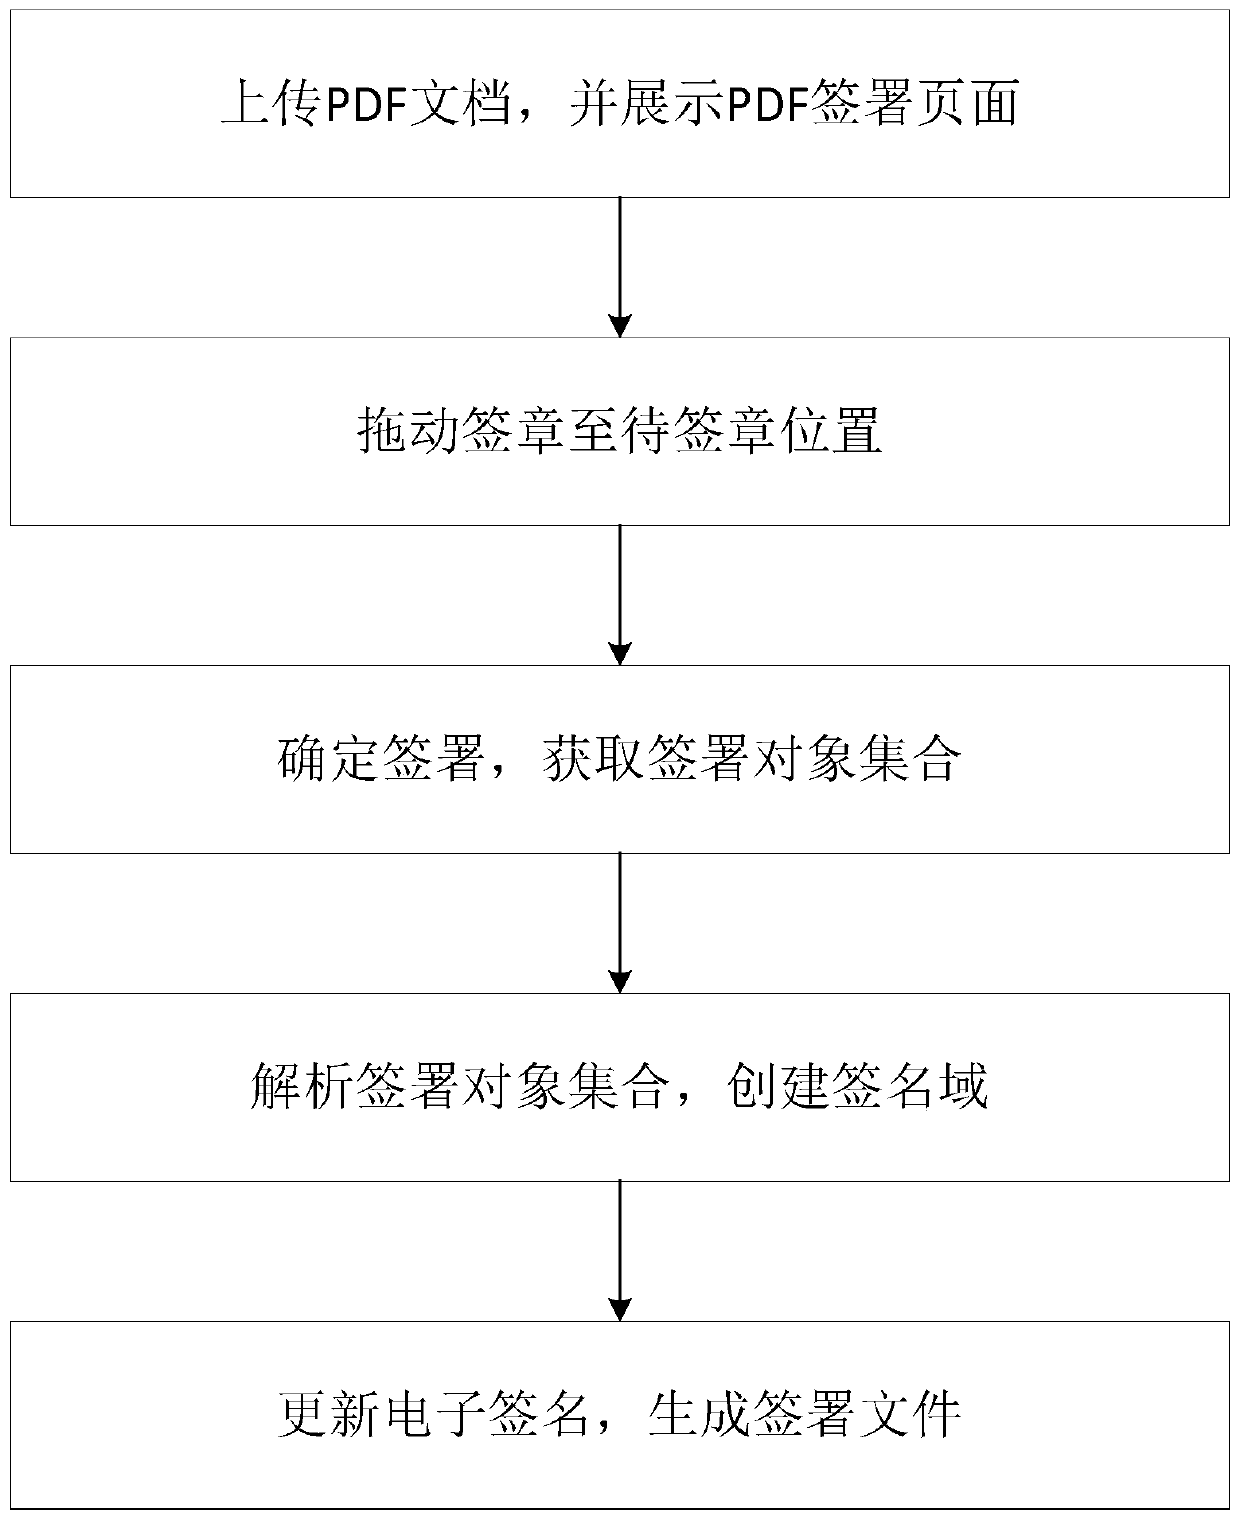 PDF signature method and PDF signature system